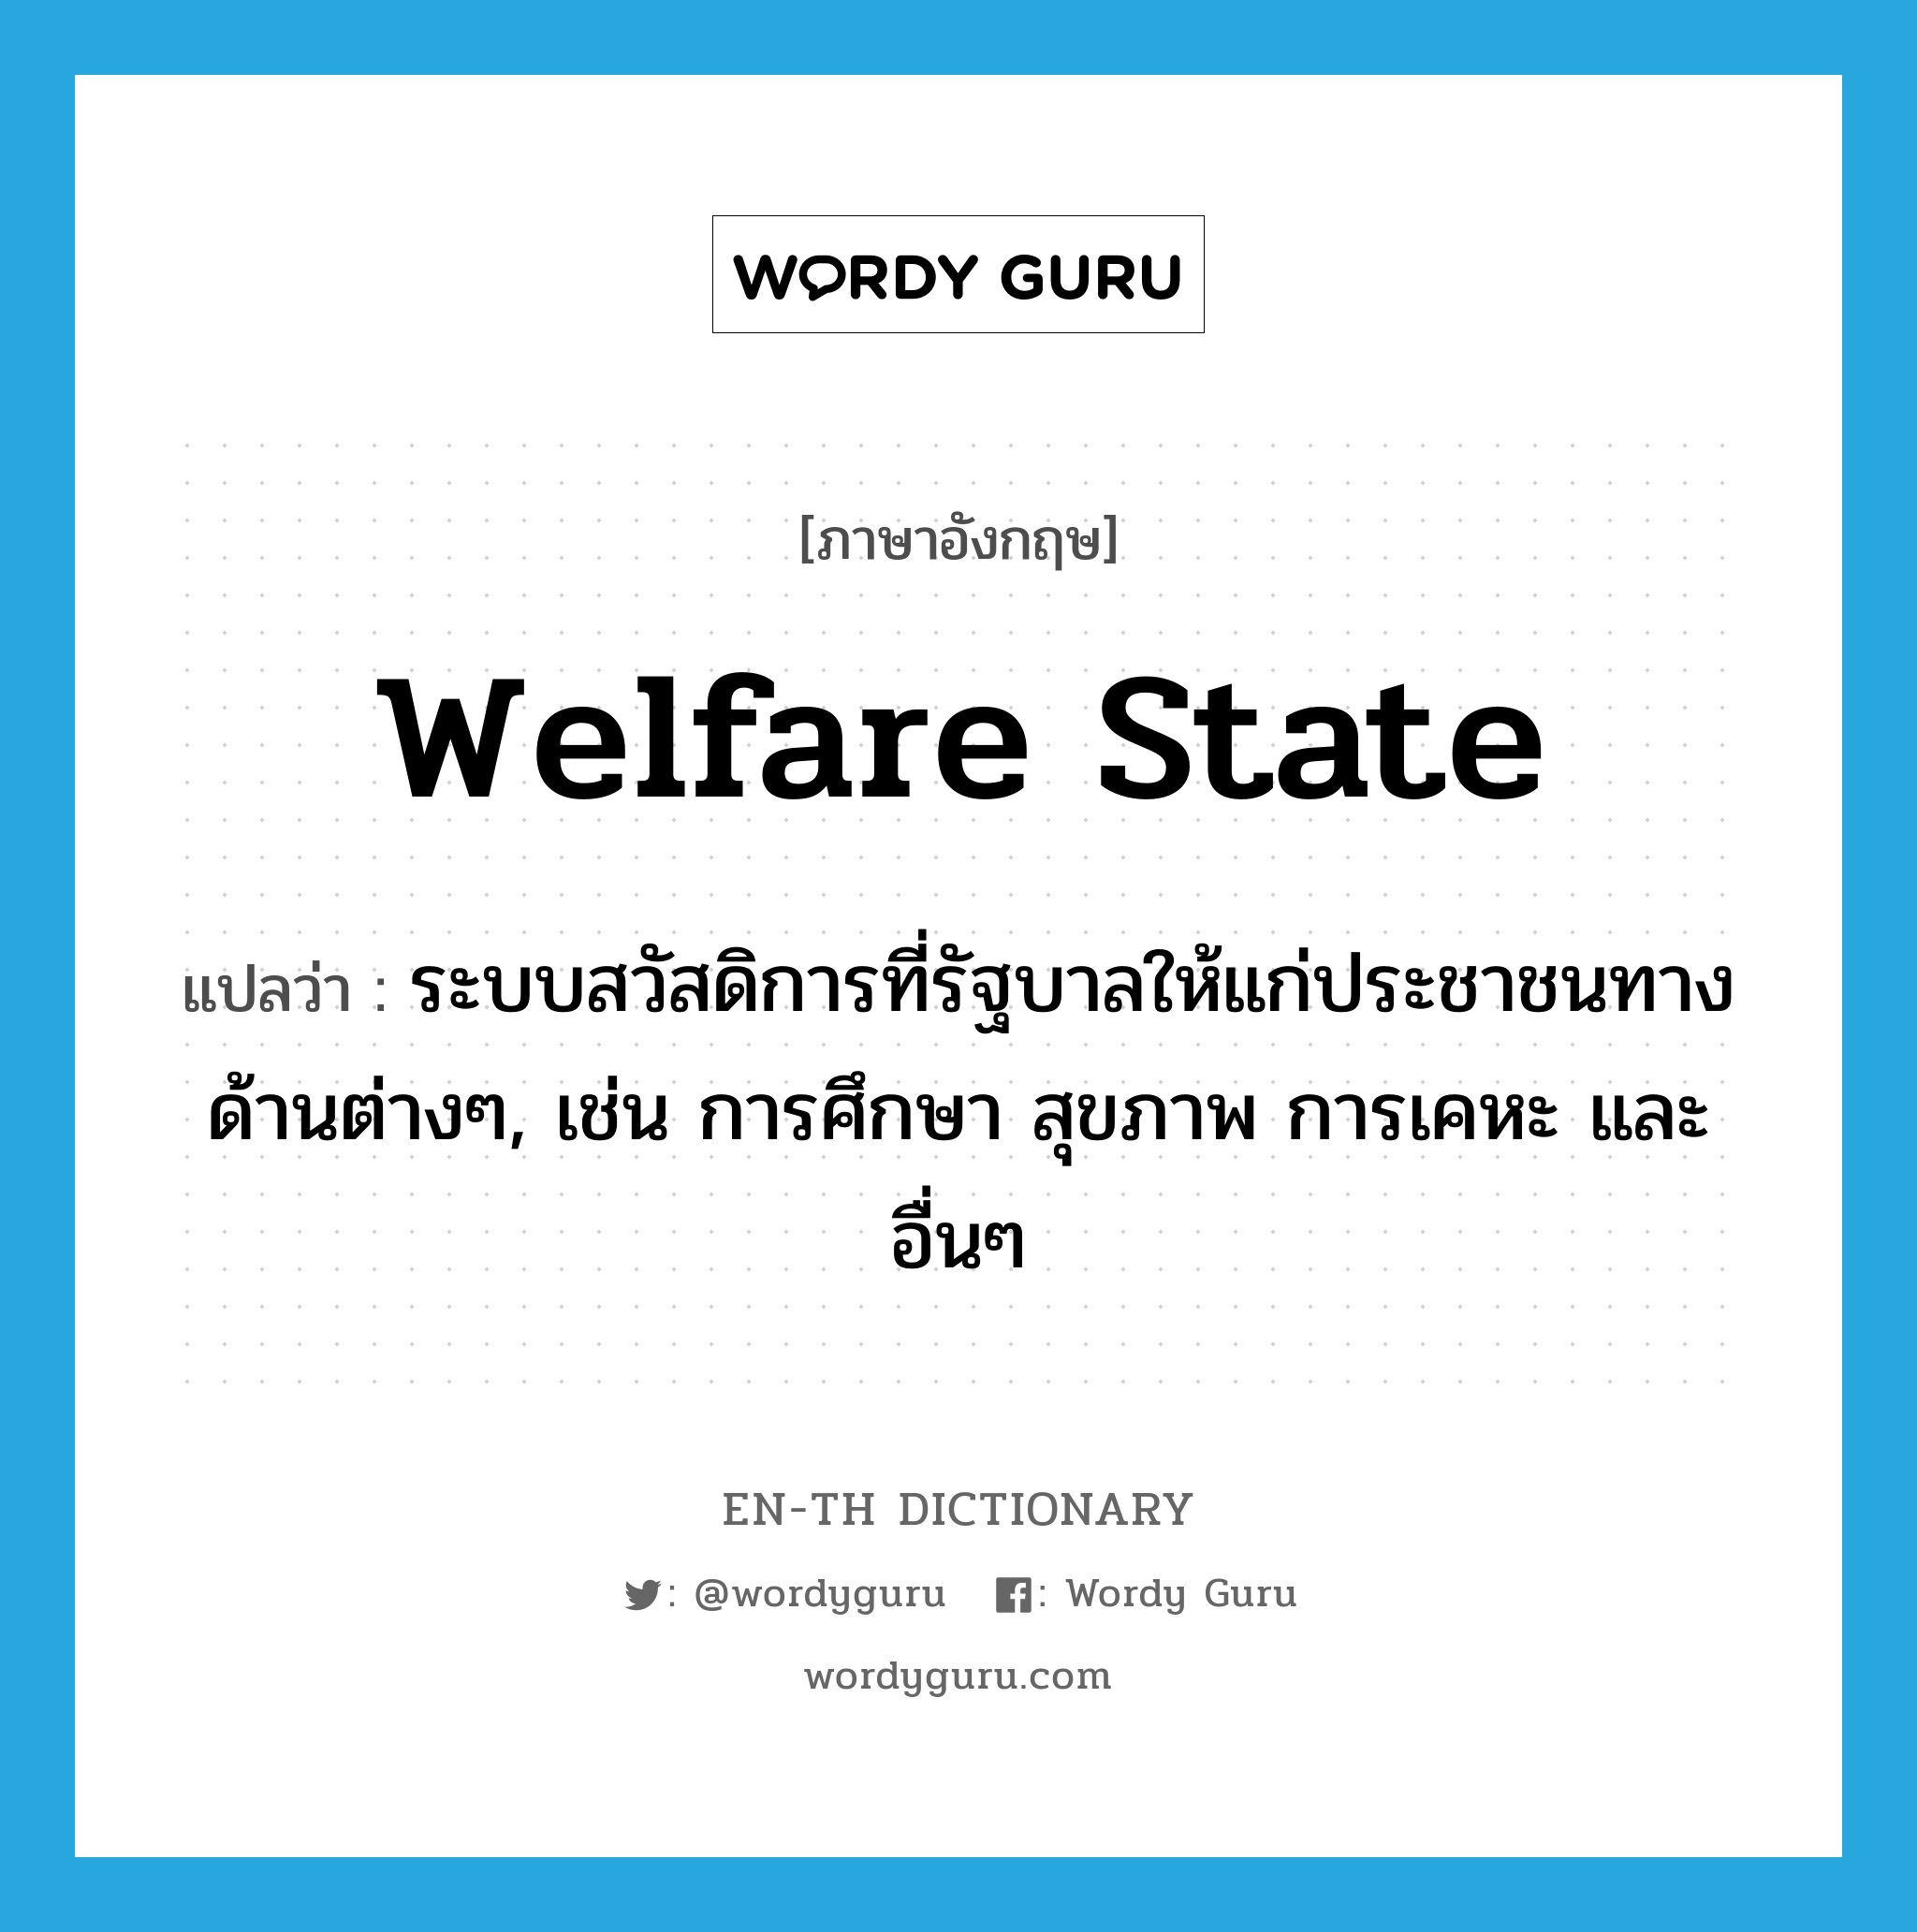 welfare state แปลว่า?, คำศัพท์ภาษาอังกฤษ welfare state แปลว่า ระบบสวัสดิการที่รัฐบาลให้แก่ประชาชนทางด้านต่างๆ, เช่น การศึกษา สุขภาพ การเคหะ และอื่นๆ ประเภท N หมวด N